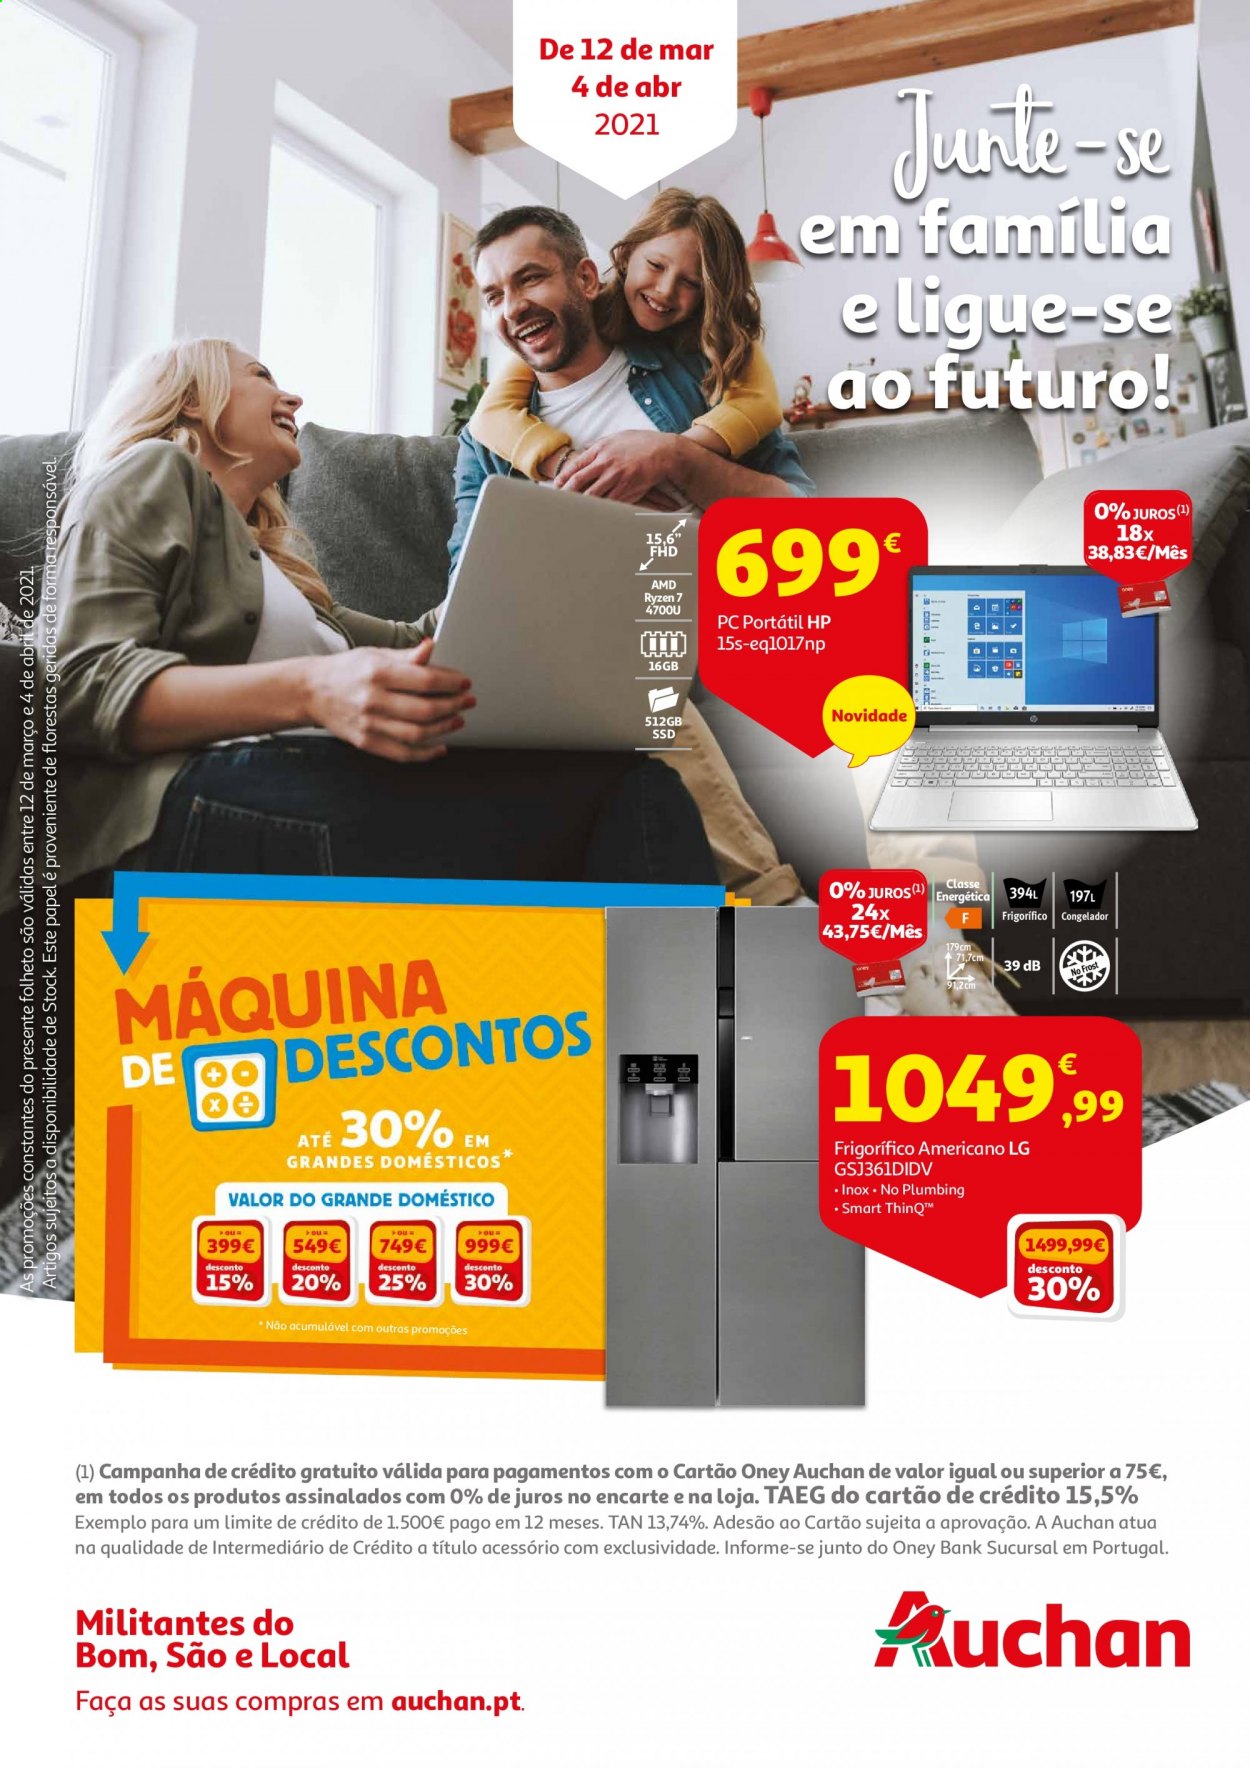 thumbnail - Folheto Auchan - 12.3.2021 - 4.4.2021 - Produtos em promoção - LG. Página 1.